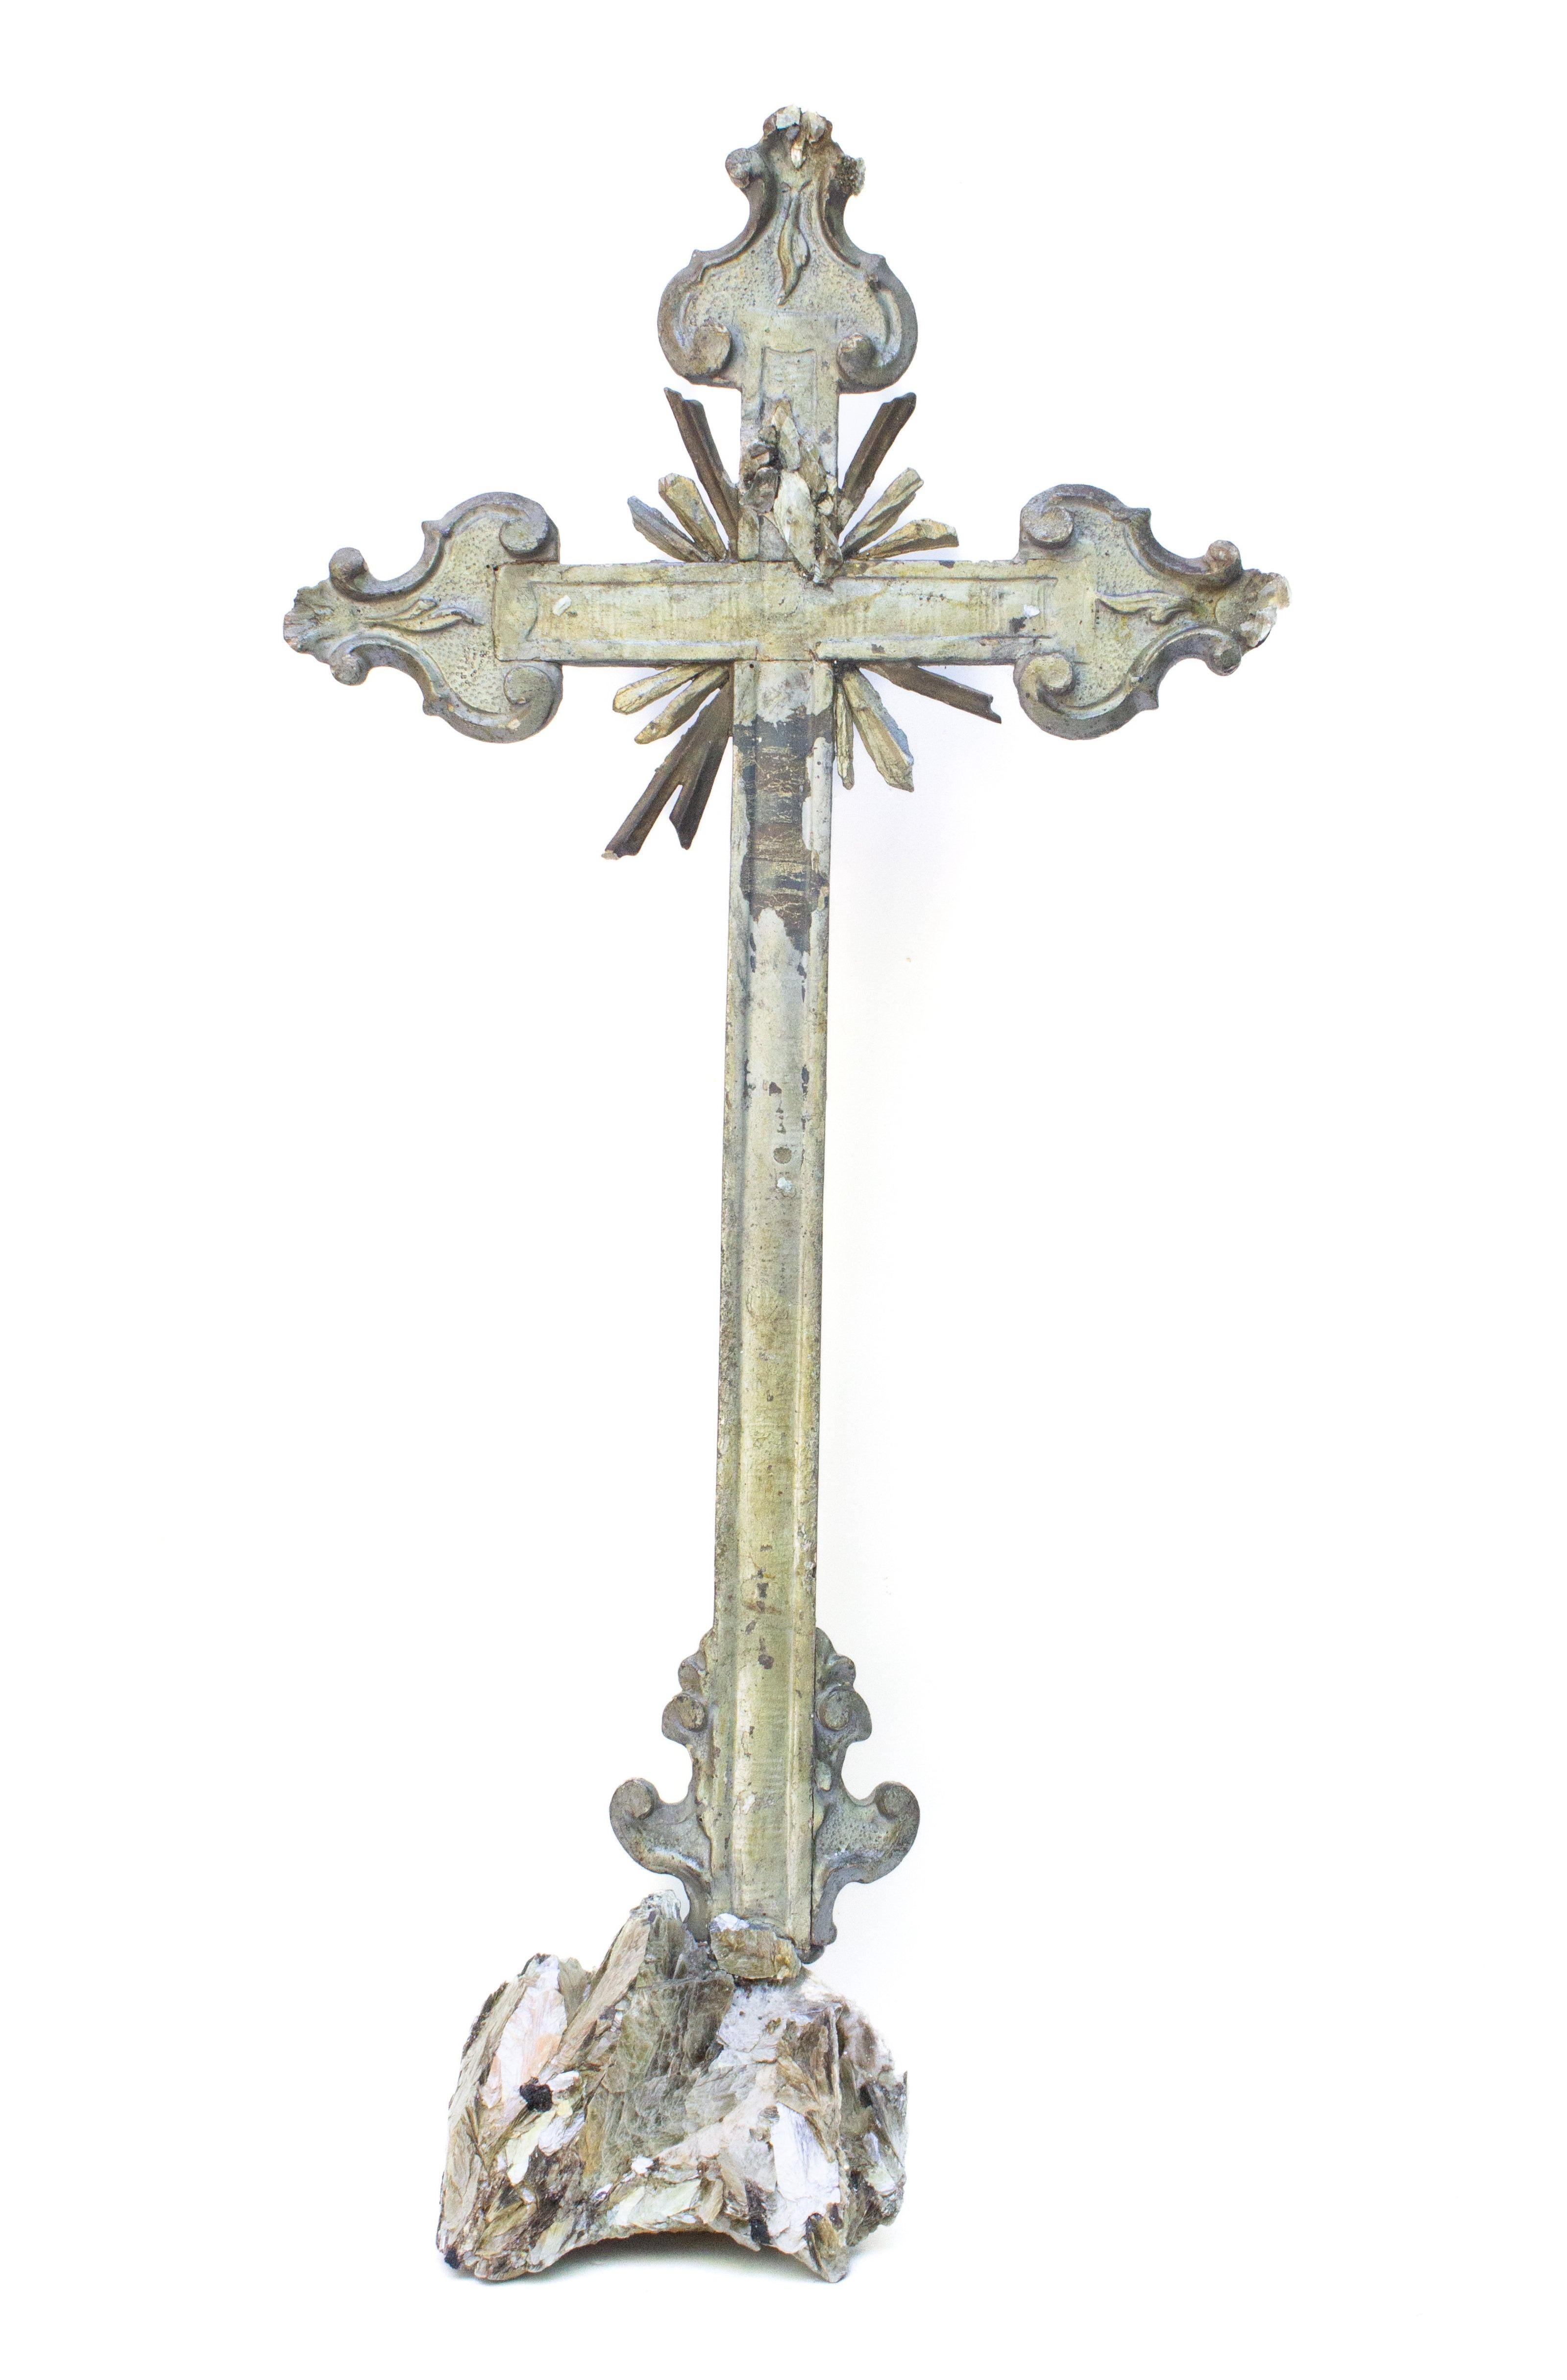 Croix italienne du XVIIIe siècle en feuille d'argent et mecca, ornée de pointes de cristal et de mica plaqués or et argent, montée sur un socle en mica et tourmaline dans une matrice de calcite. Le crucifix provenait à l'origine d'une église de